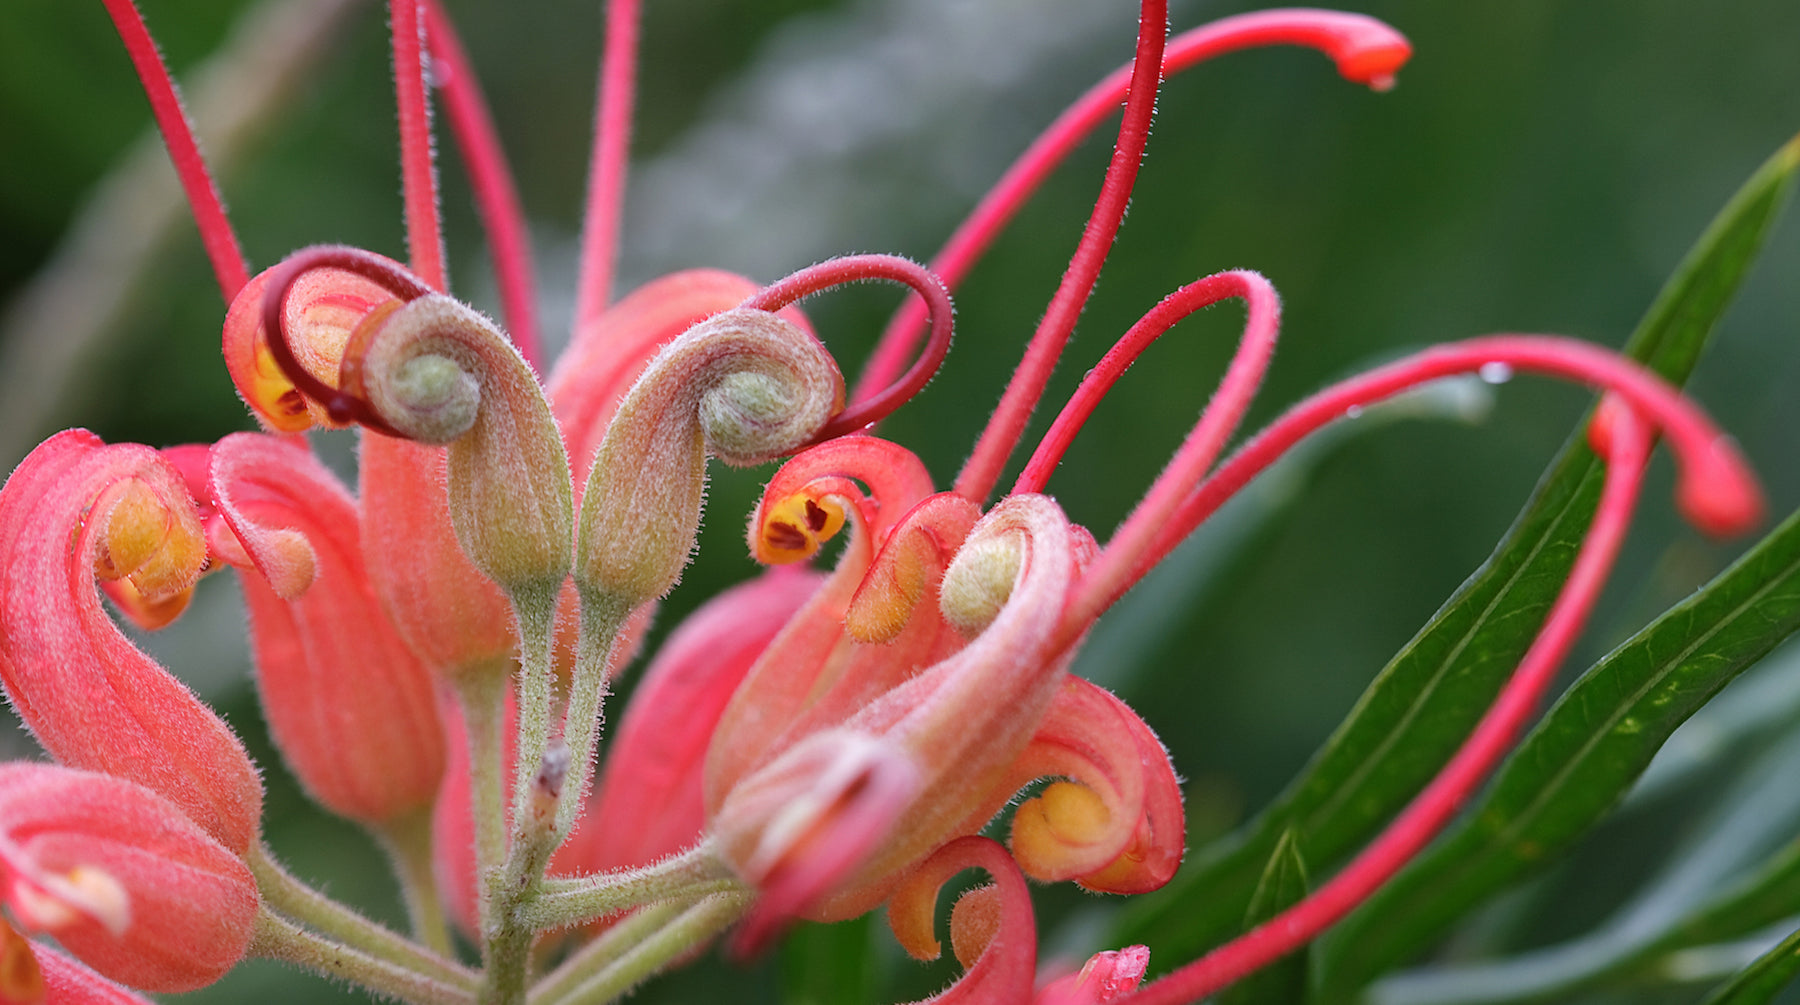 Grevillea flower essence